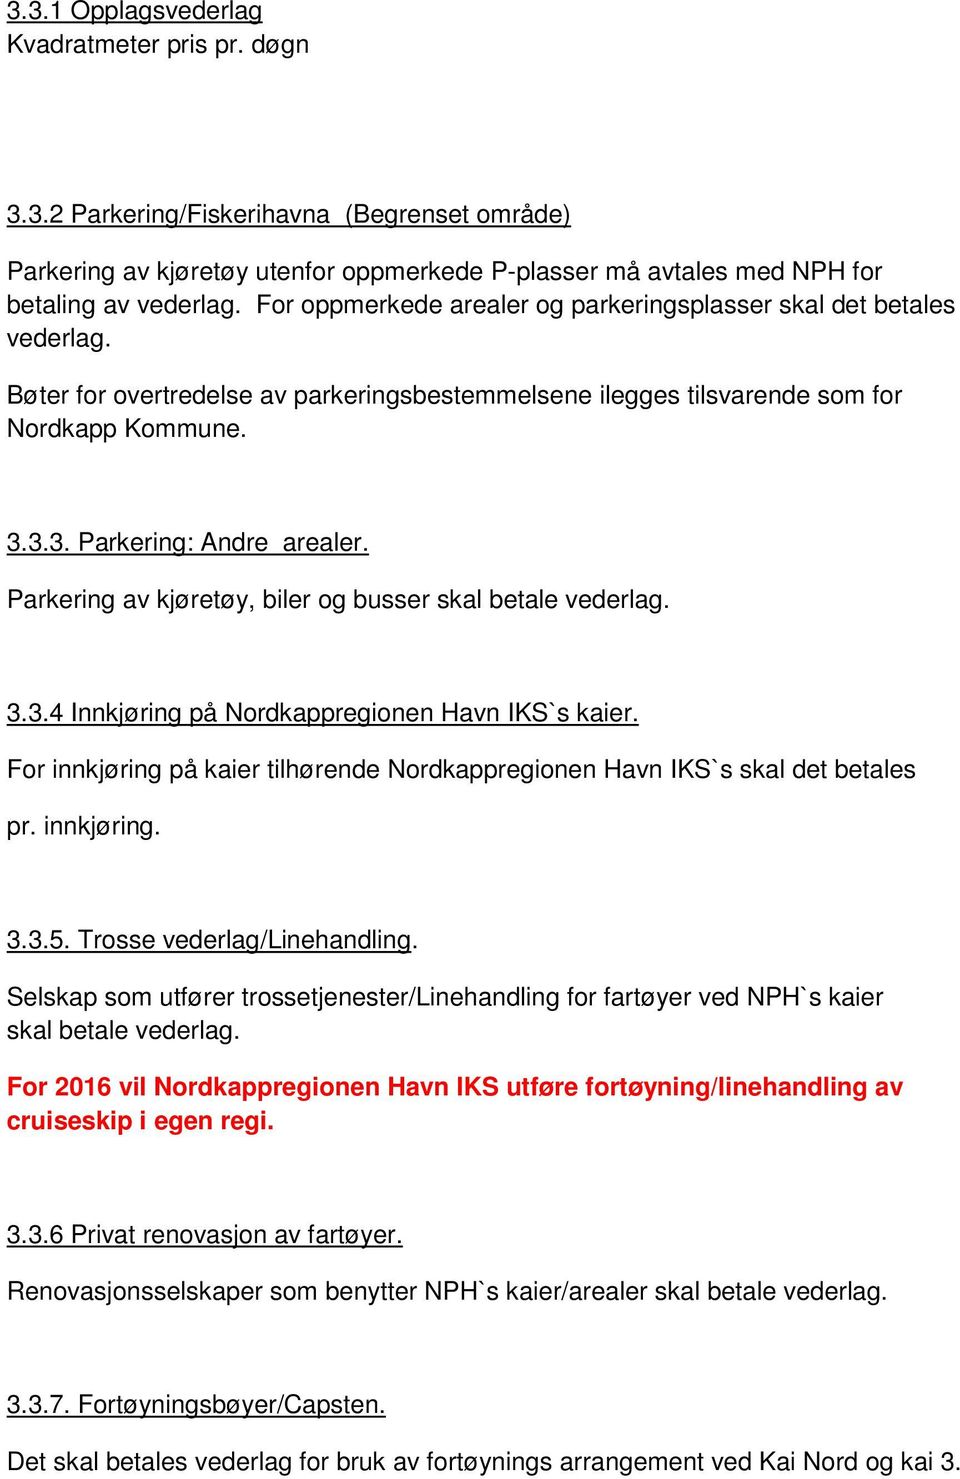 Parkering av kjøretøy, biler og busser skal betale vederlag. 3.3.4 Innkjøring på Nordkappregionen Havn IKS`s kaier. For innkjøring på kaier tilhørende Nordkappregionen Havn IKS`s skal det betales pr.